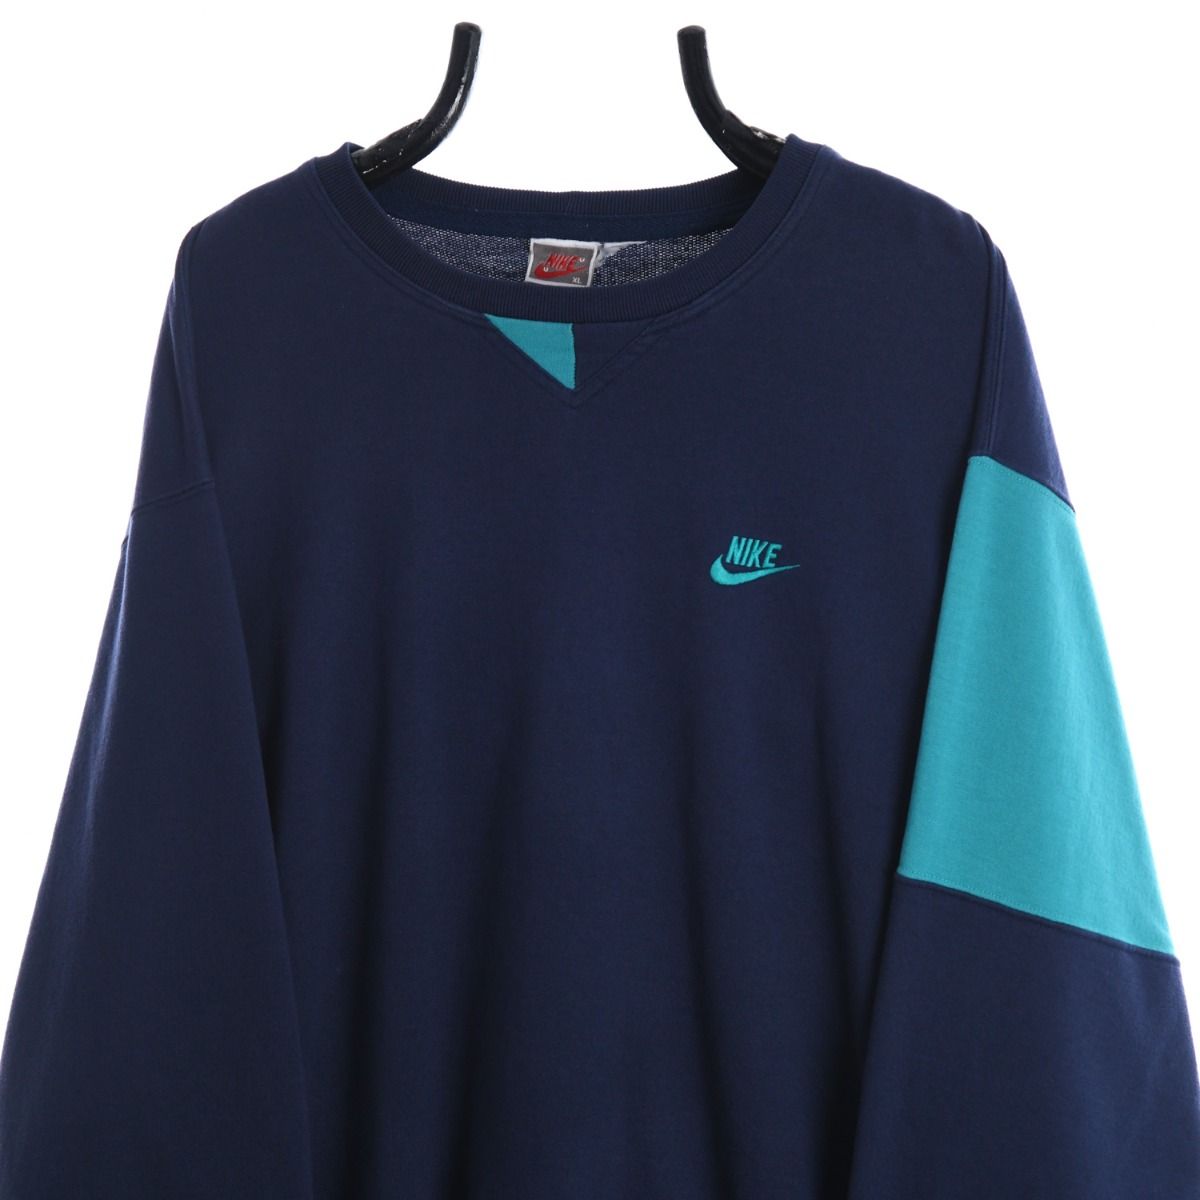 Nike Early 1990s Sweatshirt